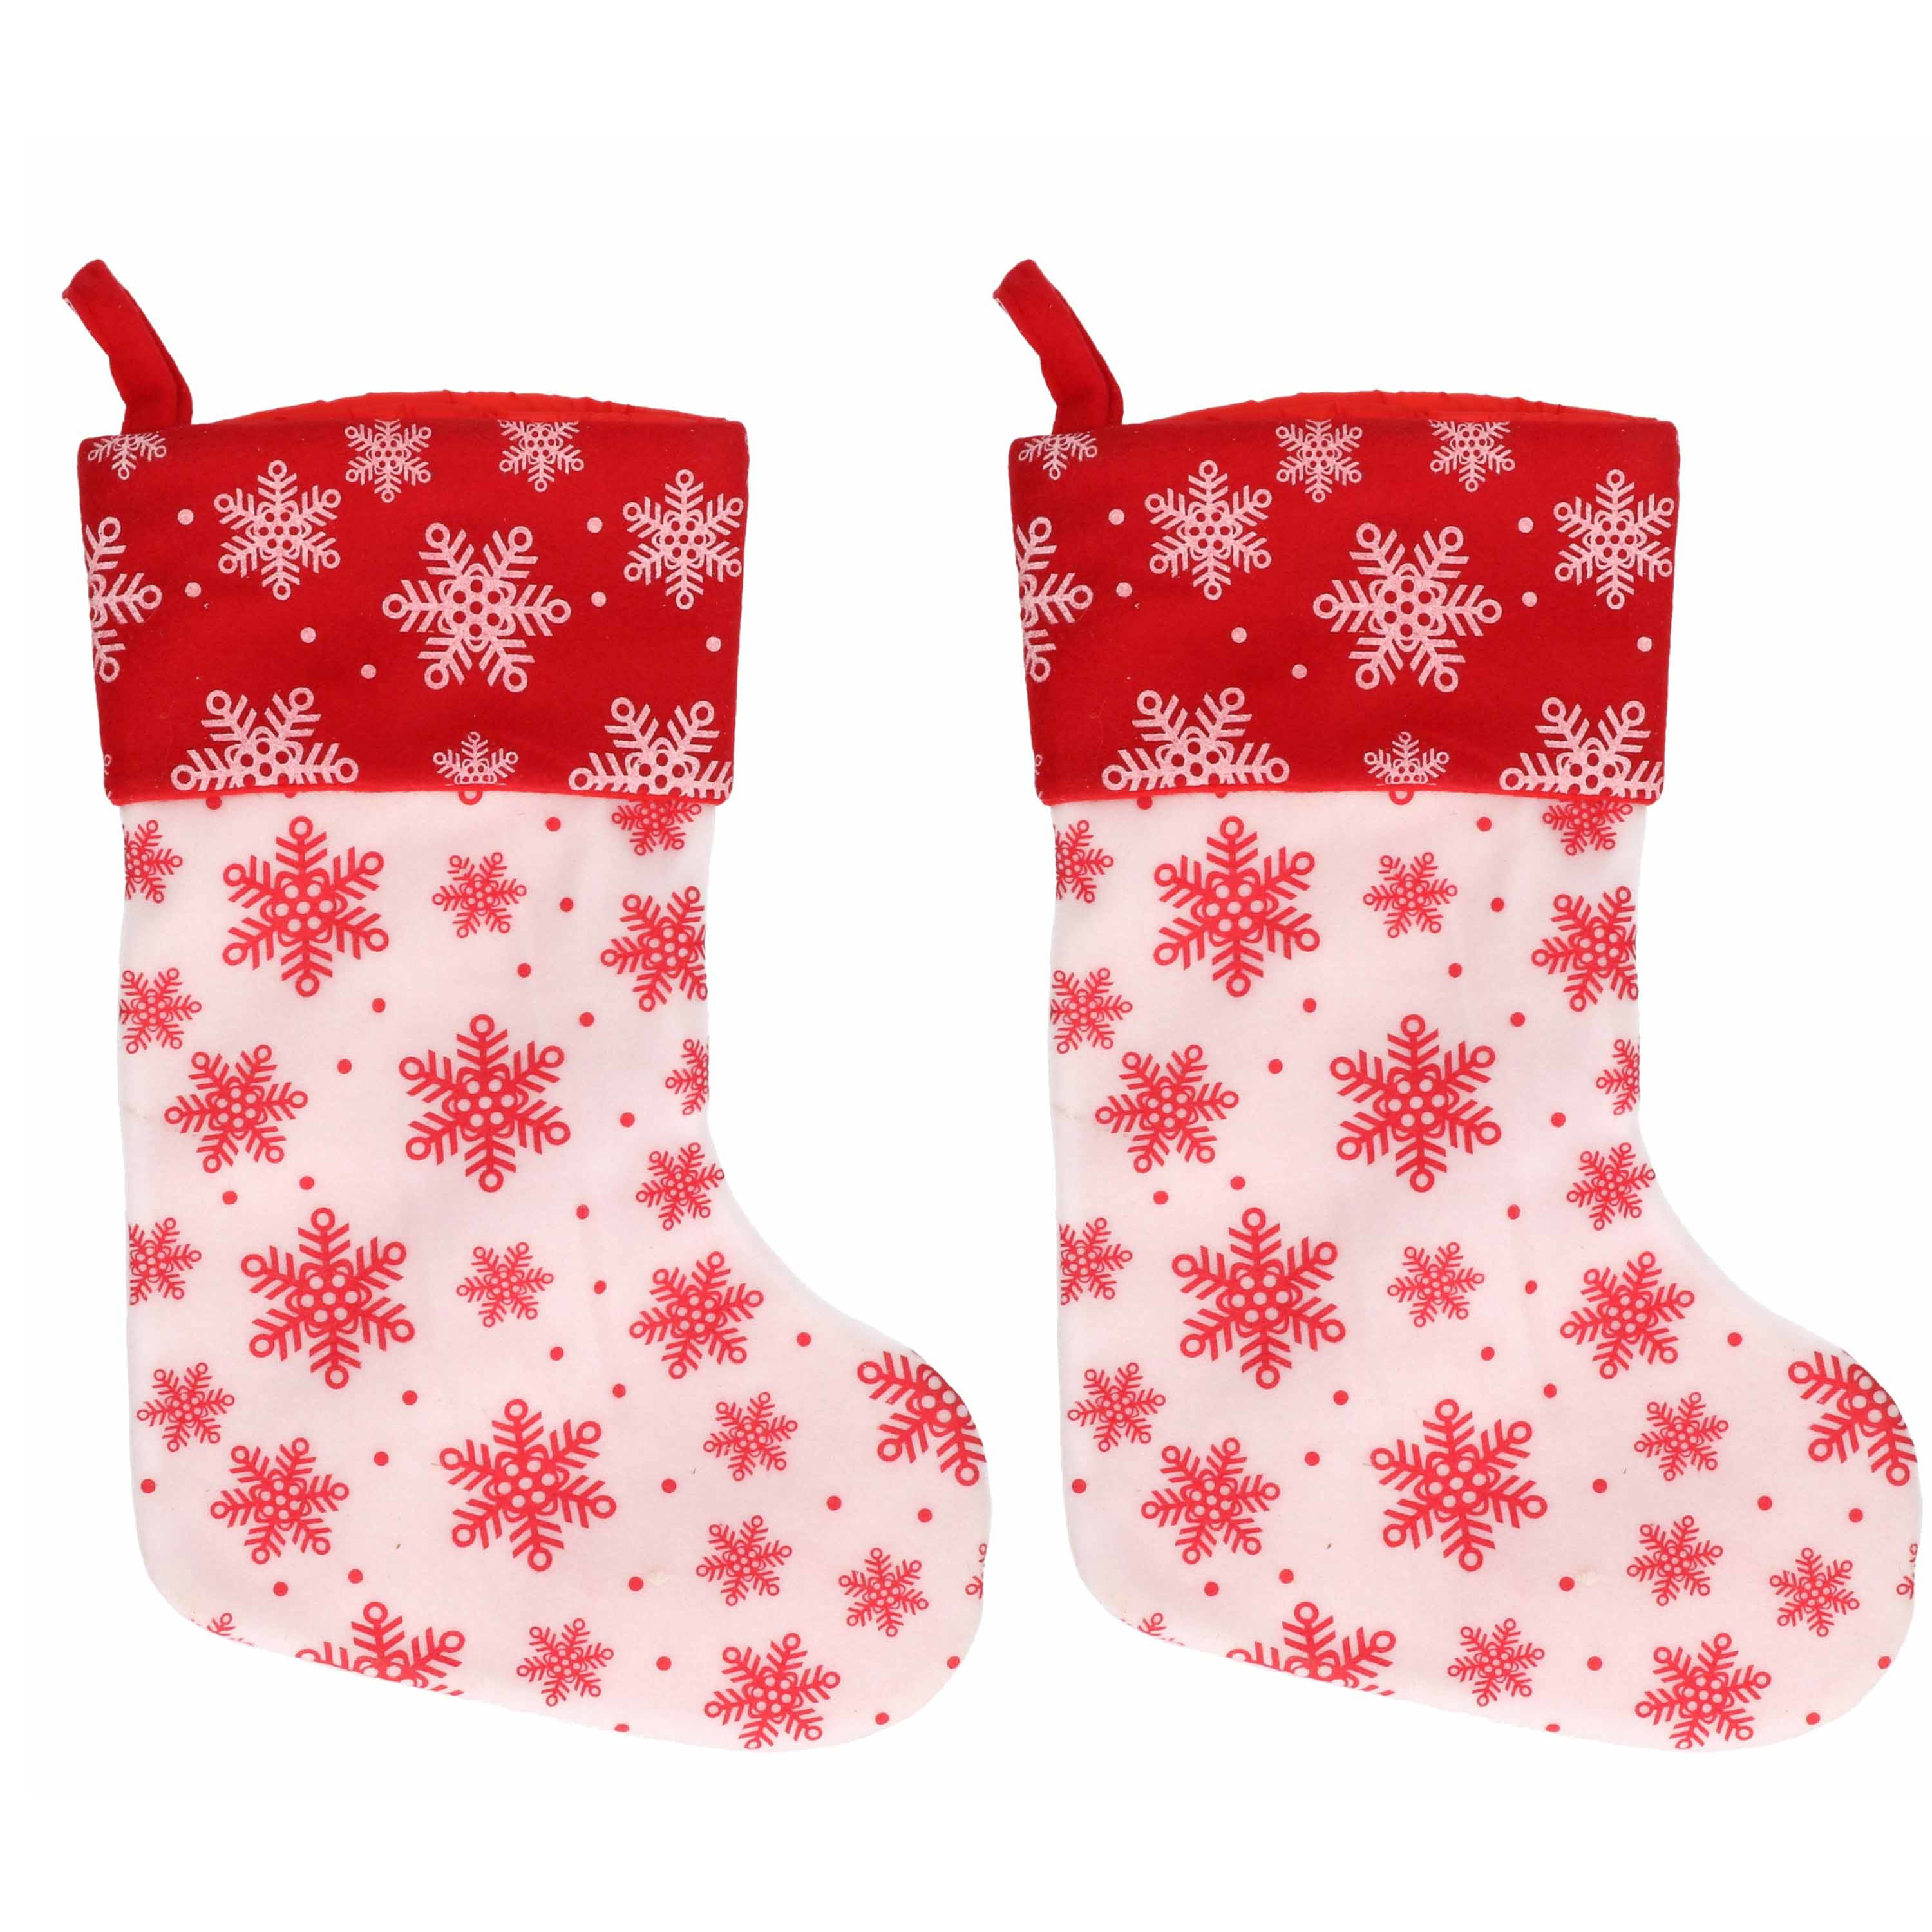 2x Wit-rode kerstsokken met sneeuwvlokken print 40 cm